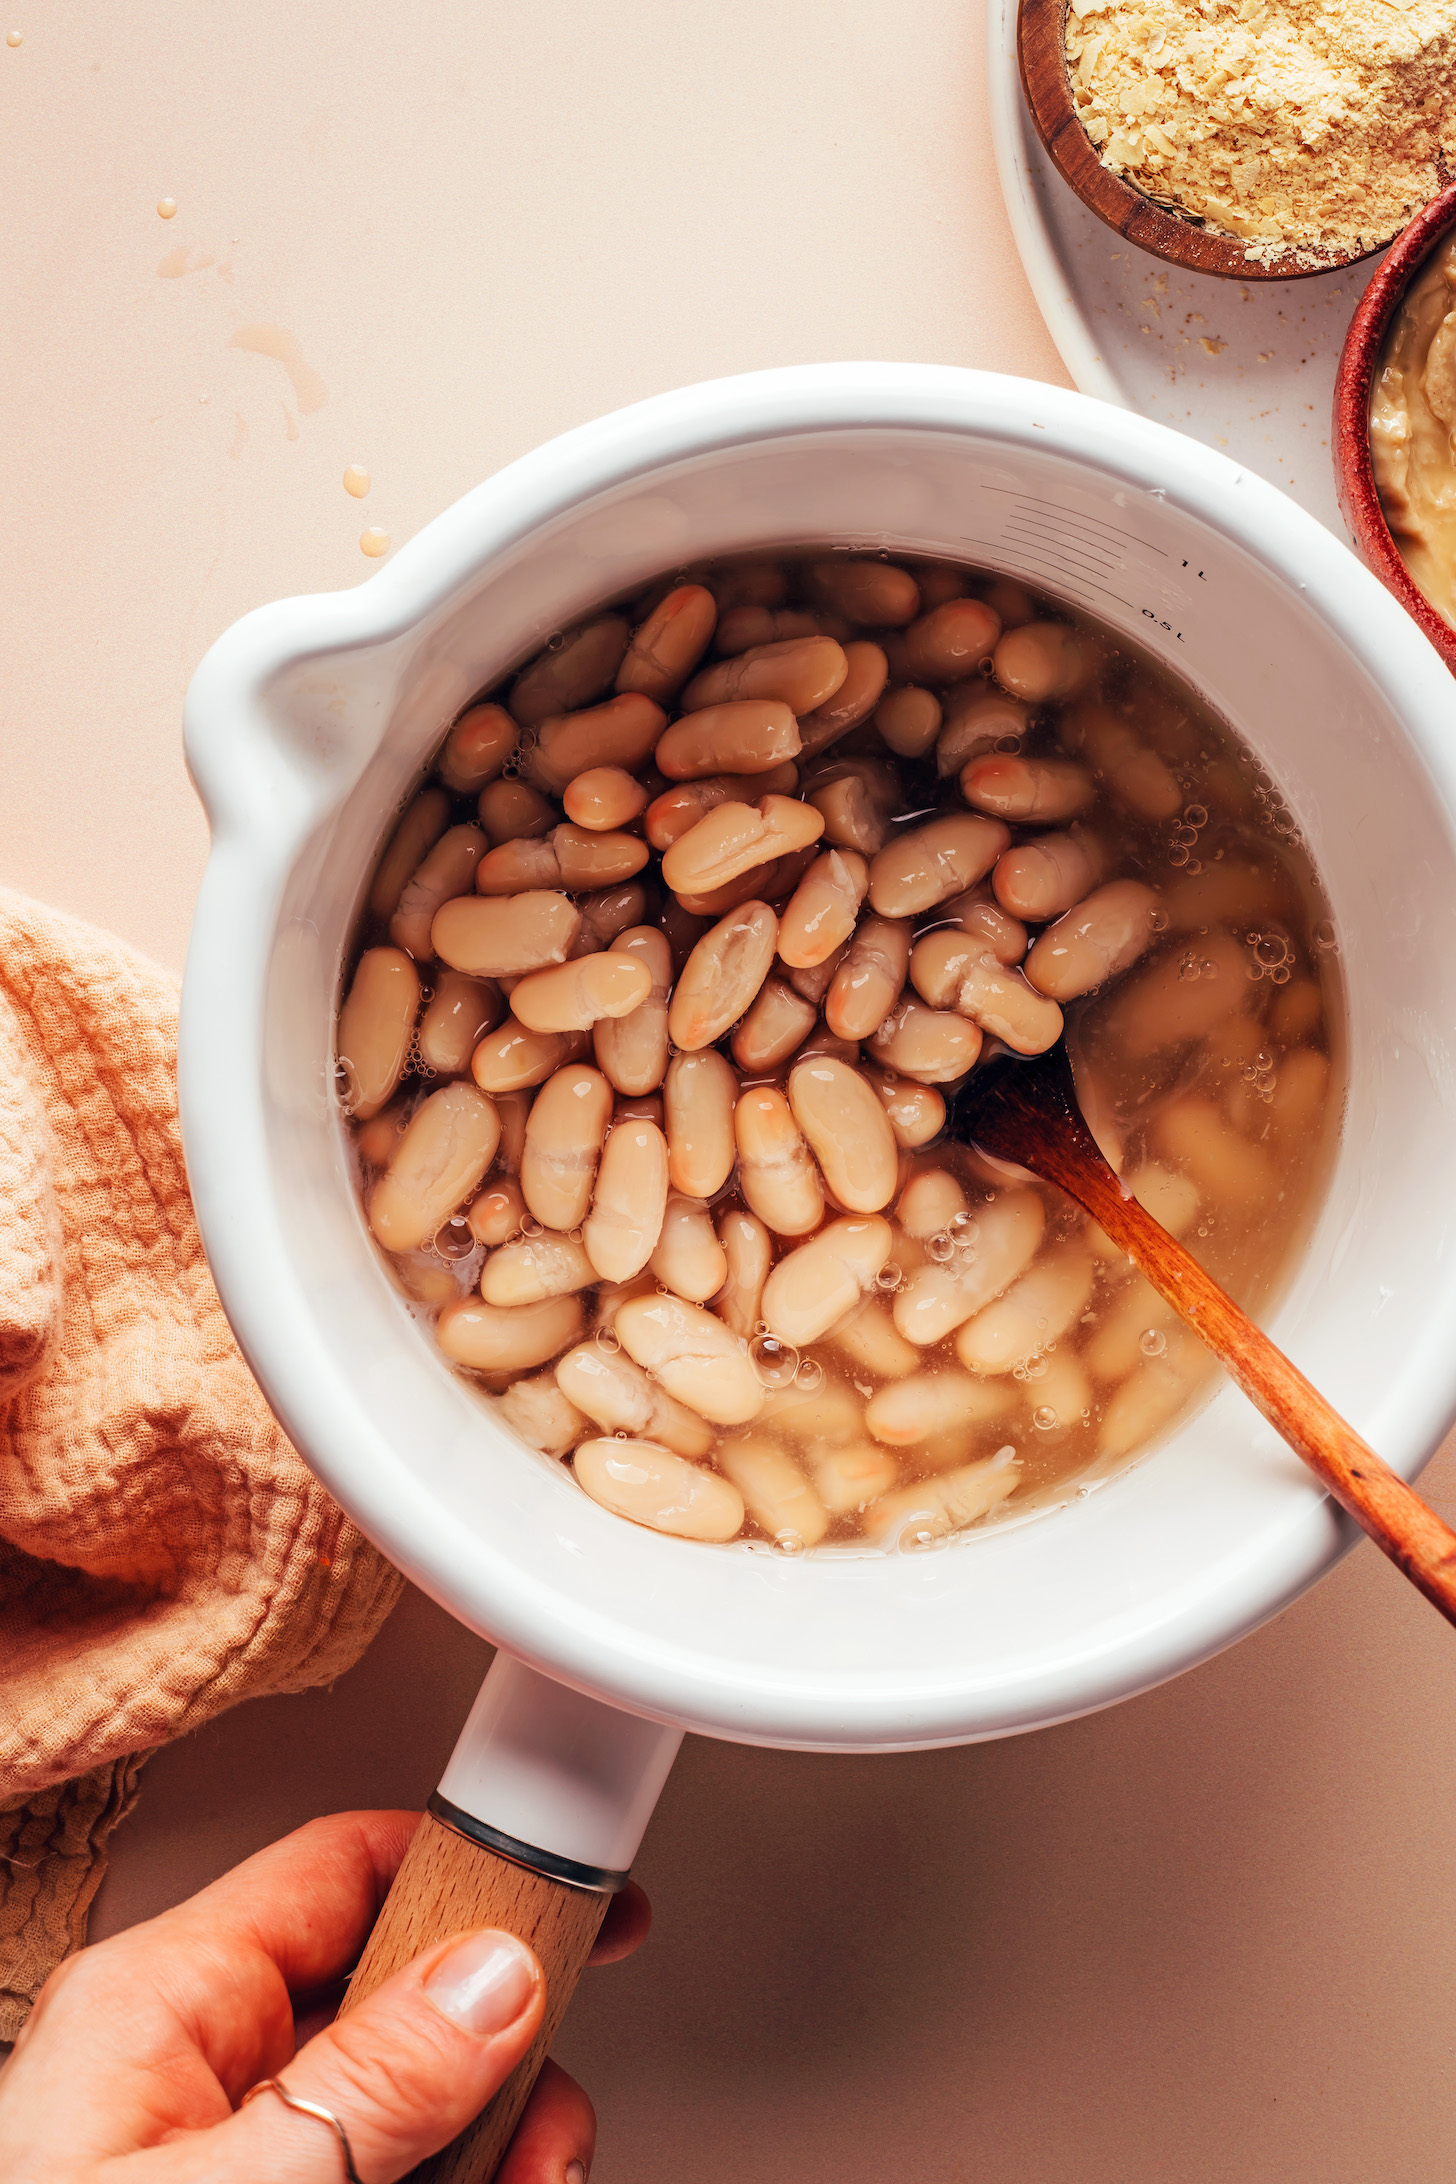 Heating white beans in a saucepan